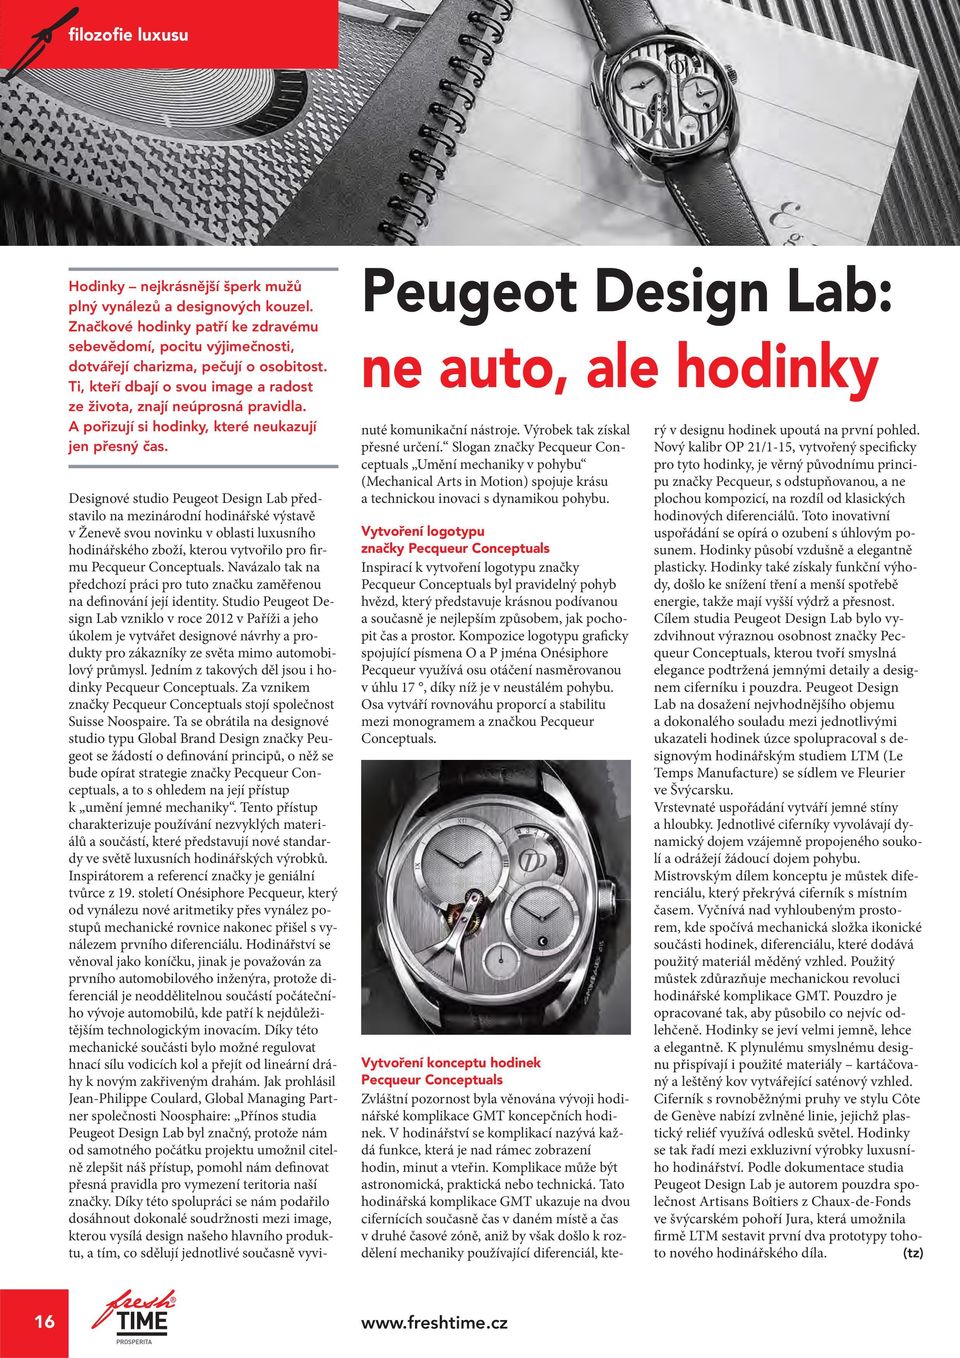 Peugeot Design Lab: ne auto, ale hodinky Designové studio Peugeot Design Lab představilo na mezinárodní hodinářské výstavě v Ženevě svou novinku v oblasti luxusního hodinářského zboží, kterou